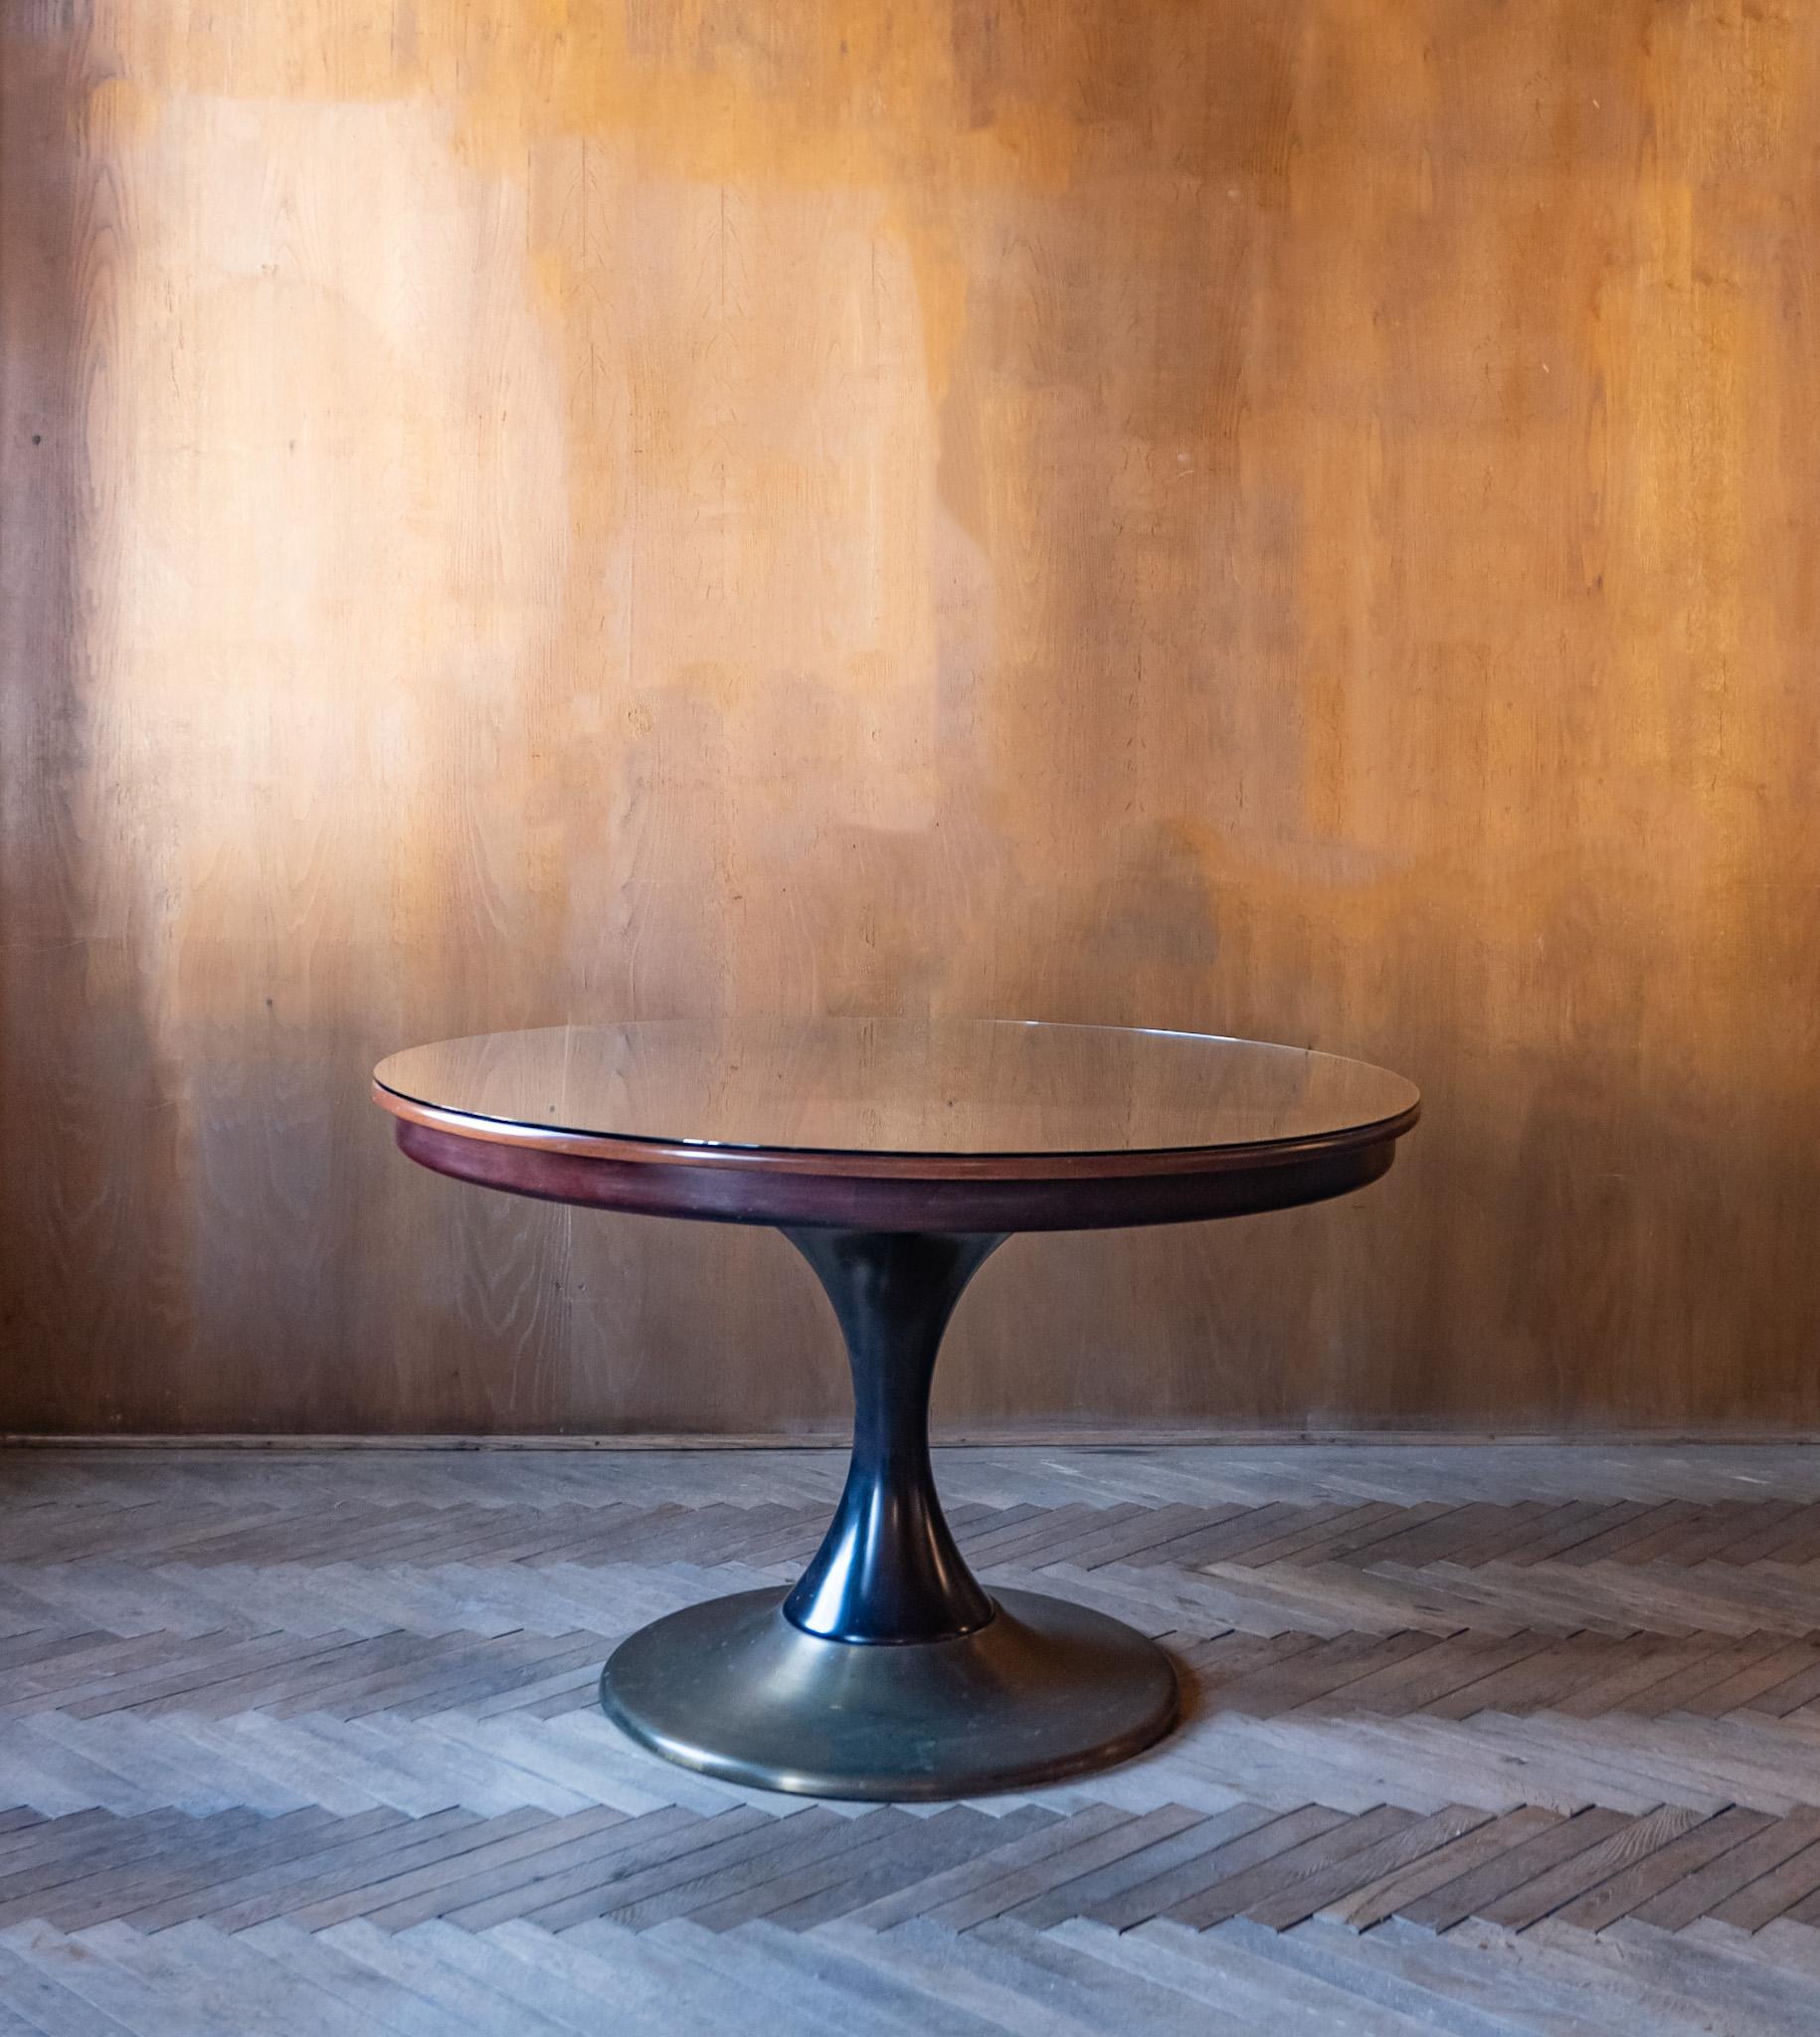 Table de salle à manger ronde en bois et laiton, Italie, années 1950.

Cette élégante table de salle à manger italienne aux magnifiques tons bruns se compose d'un plateau et d'une base de table en noyer et en laiton. Le plateau de la table en bois